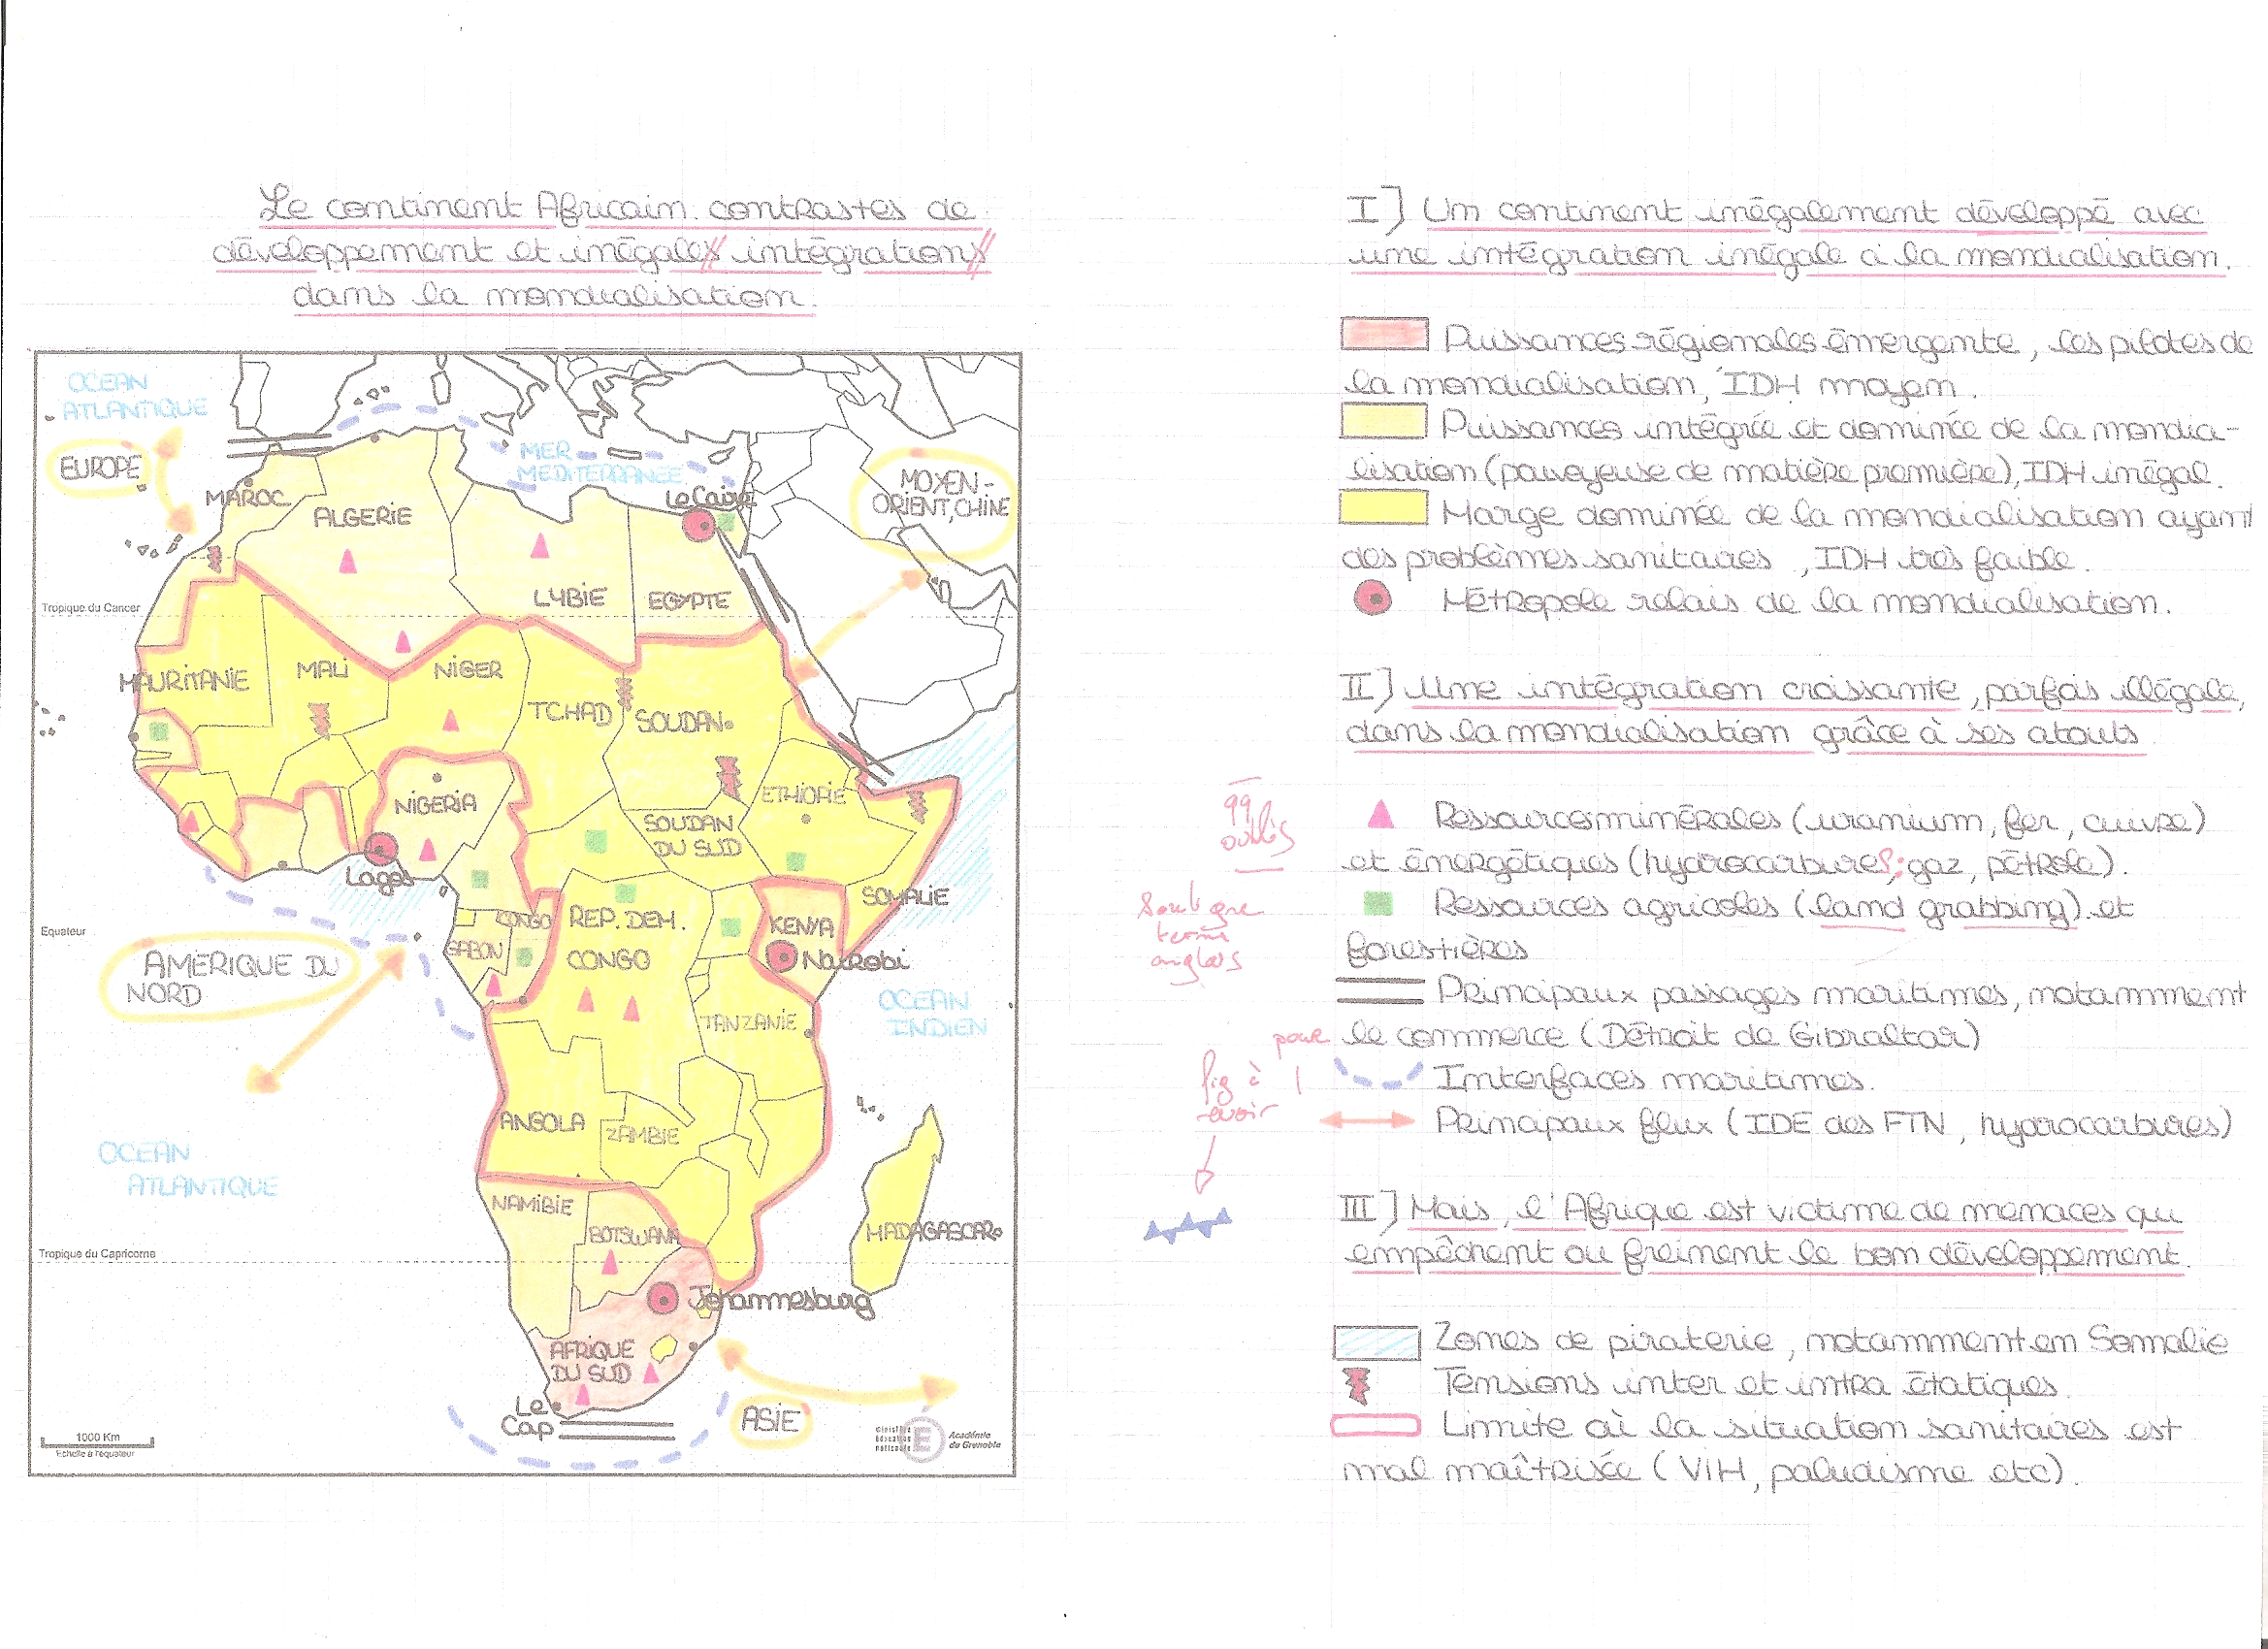 afrique histoire geographie